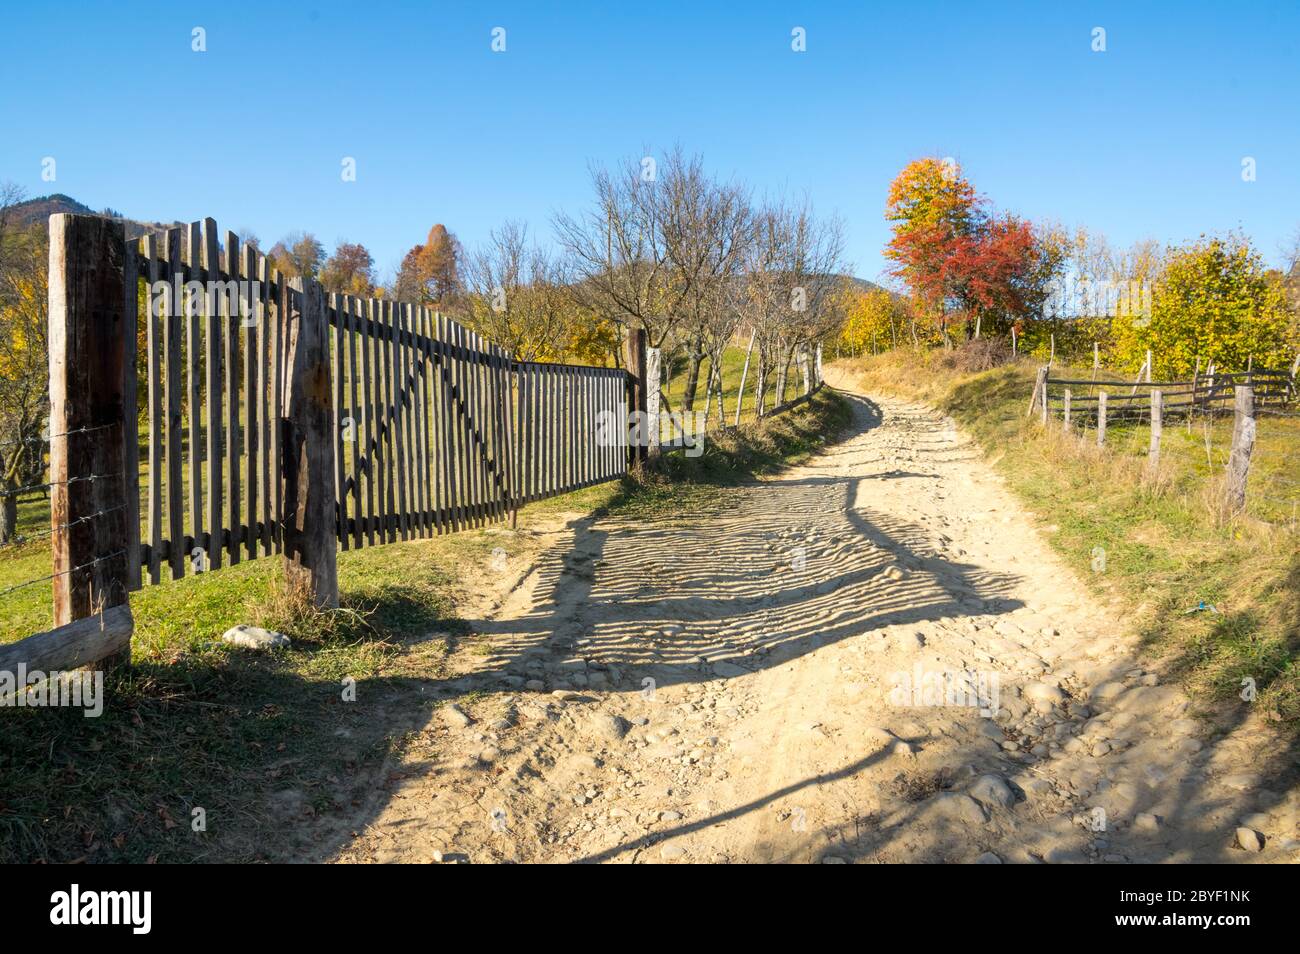 Couleurs d'automne - Coutry Road, scène rurale - Roumanie - Transylvanie Banque D'Images